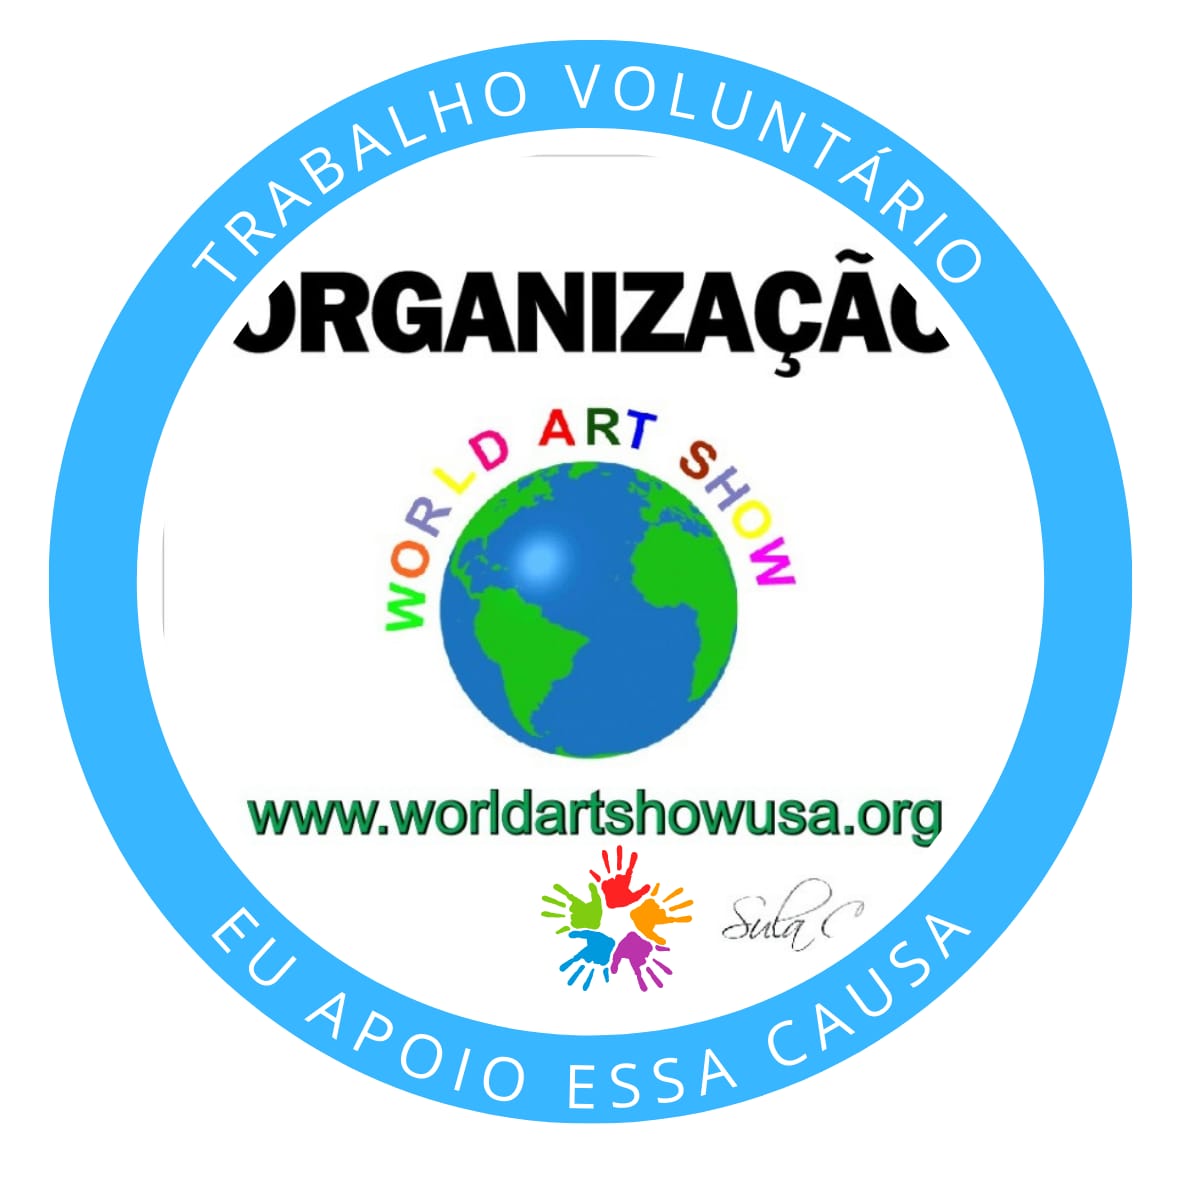 World Art Show organization